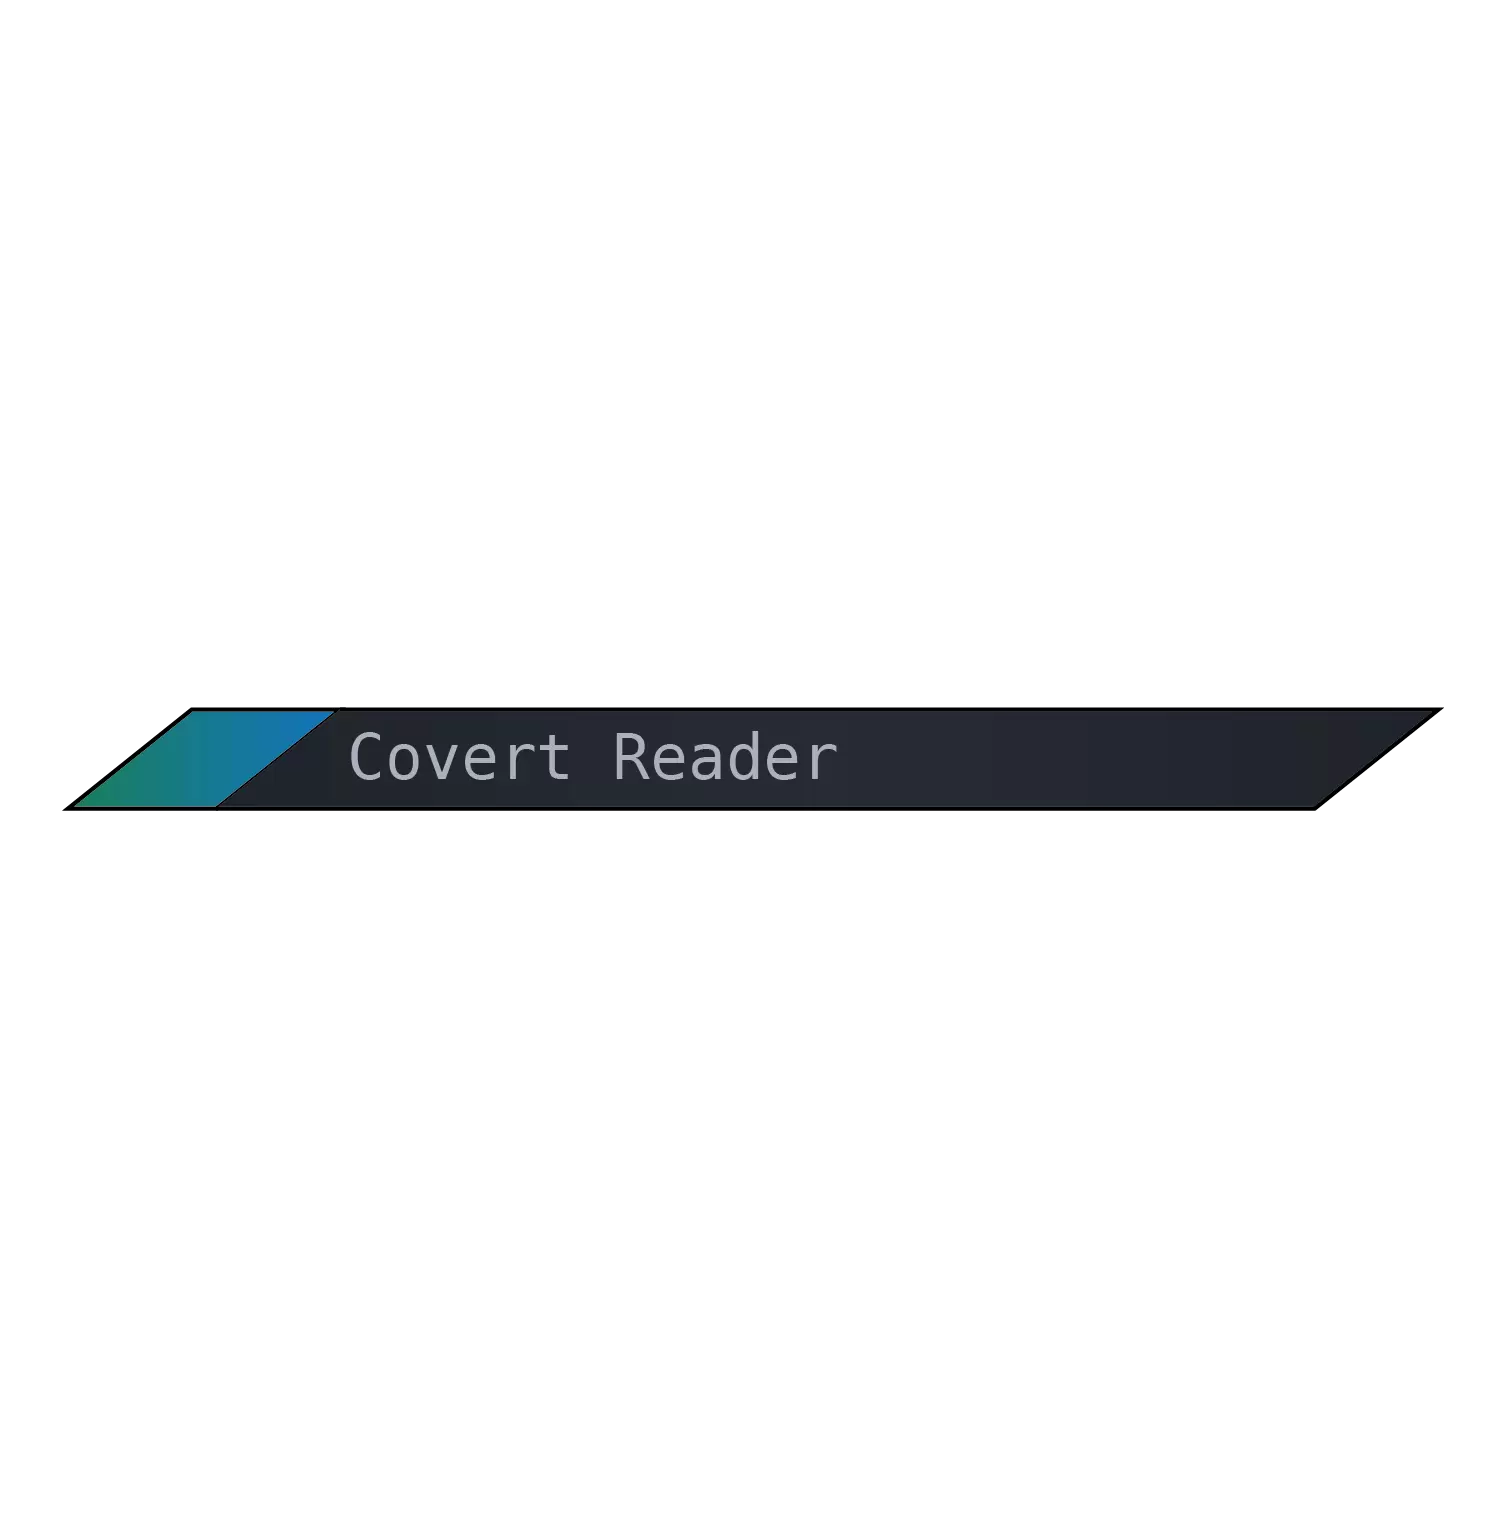 Covert Reader